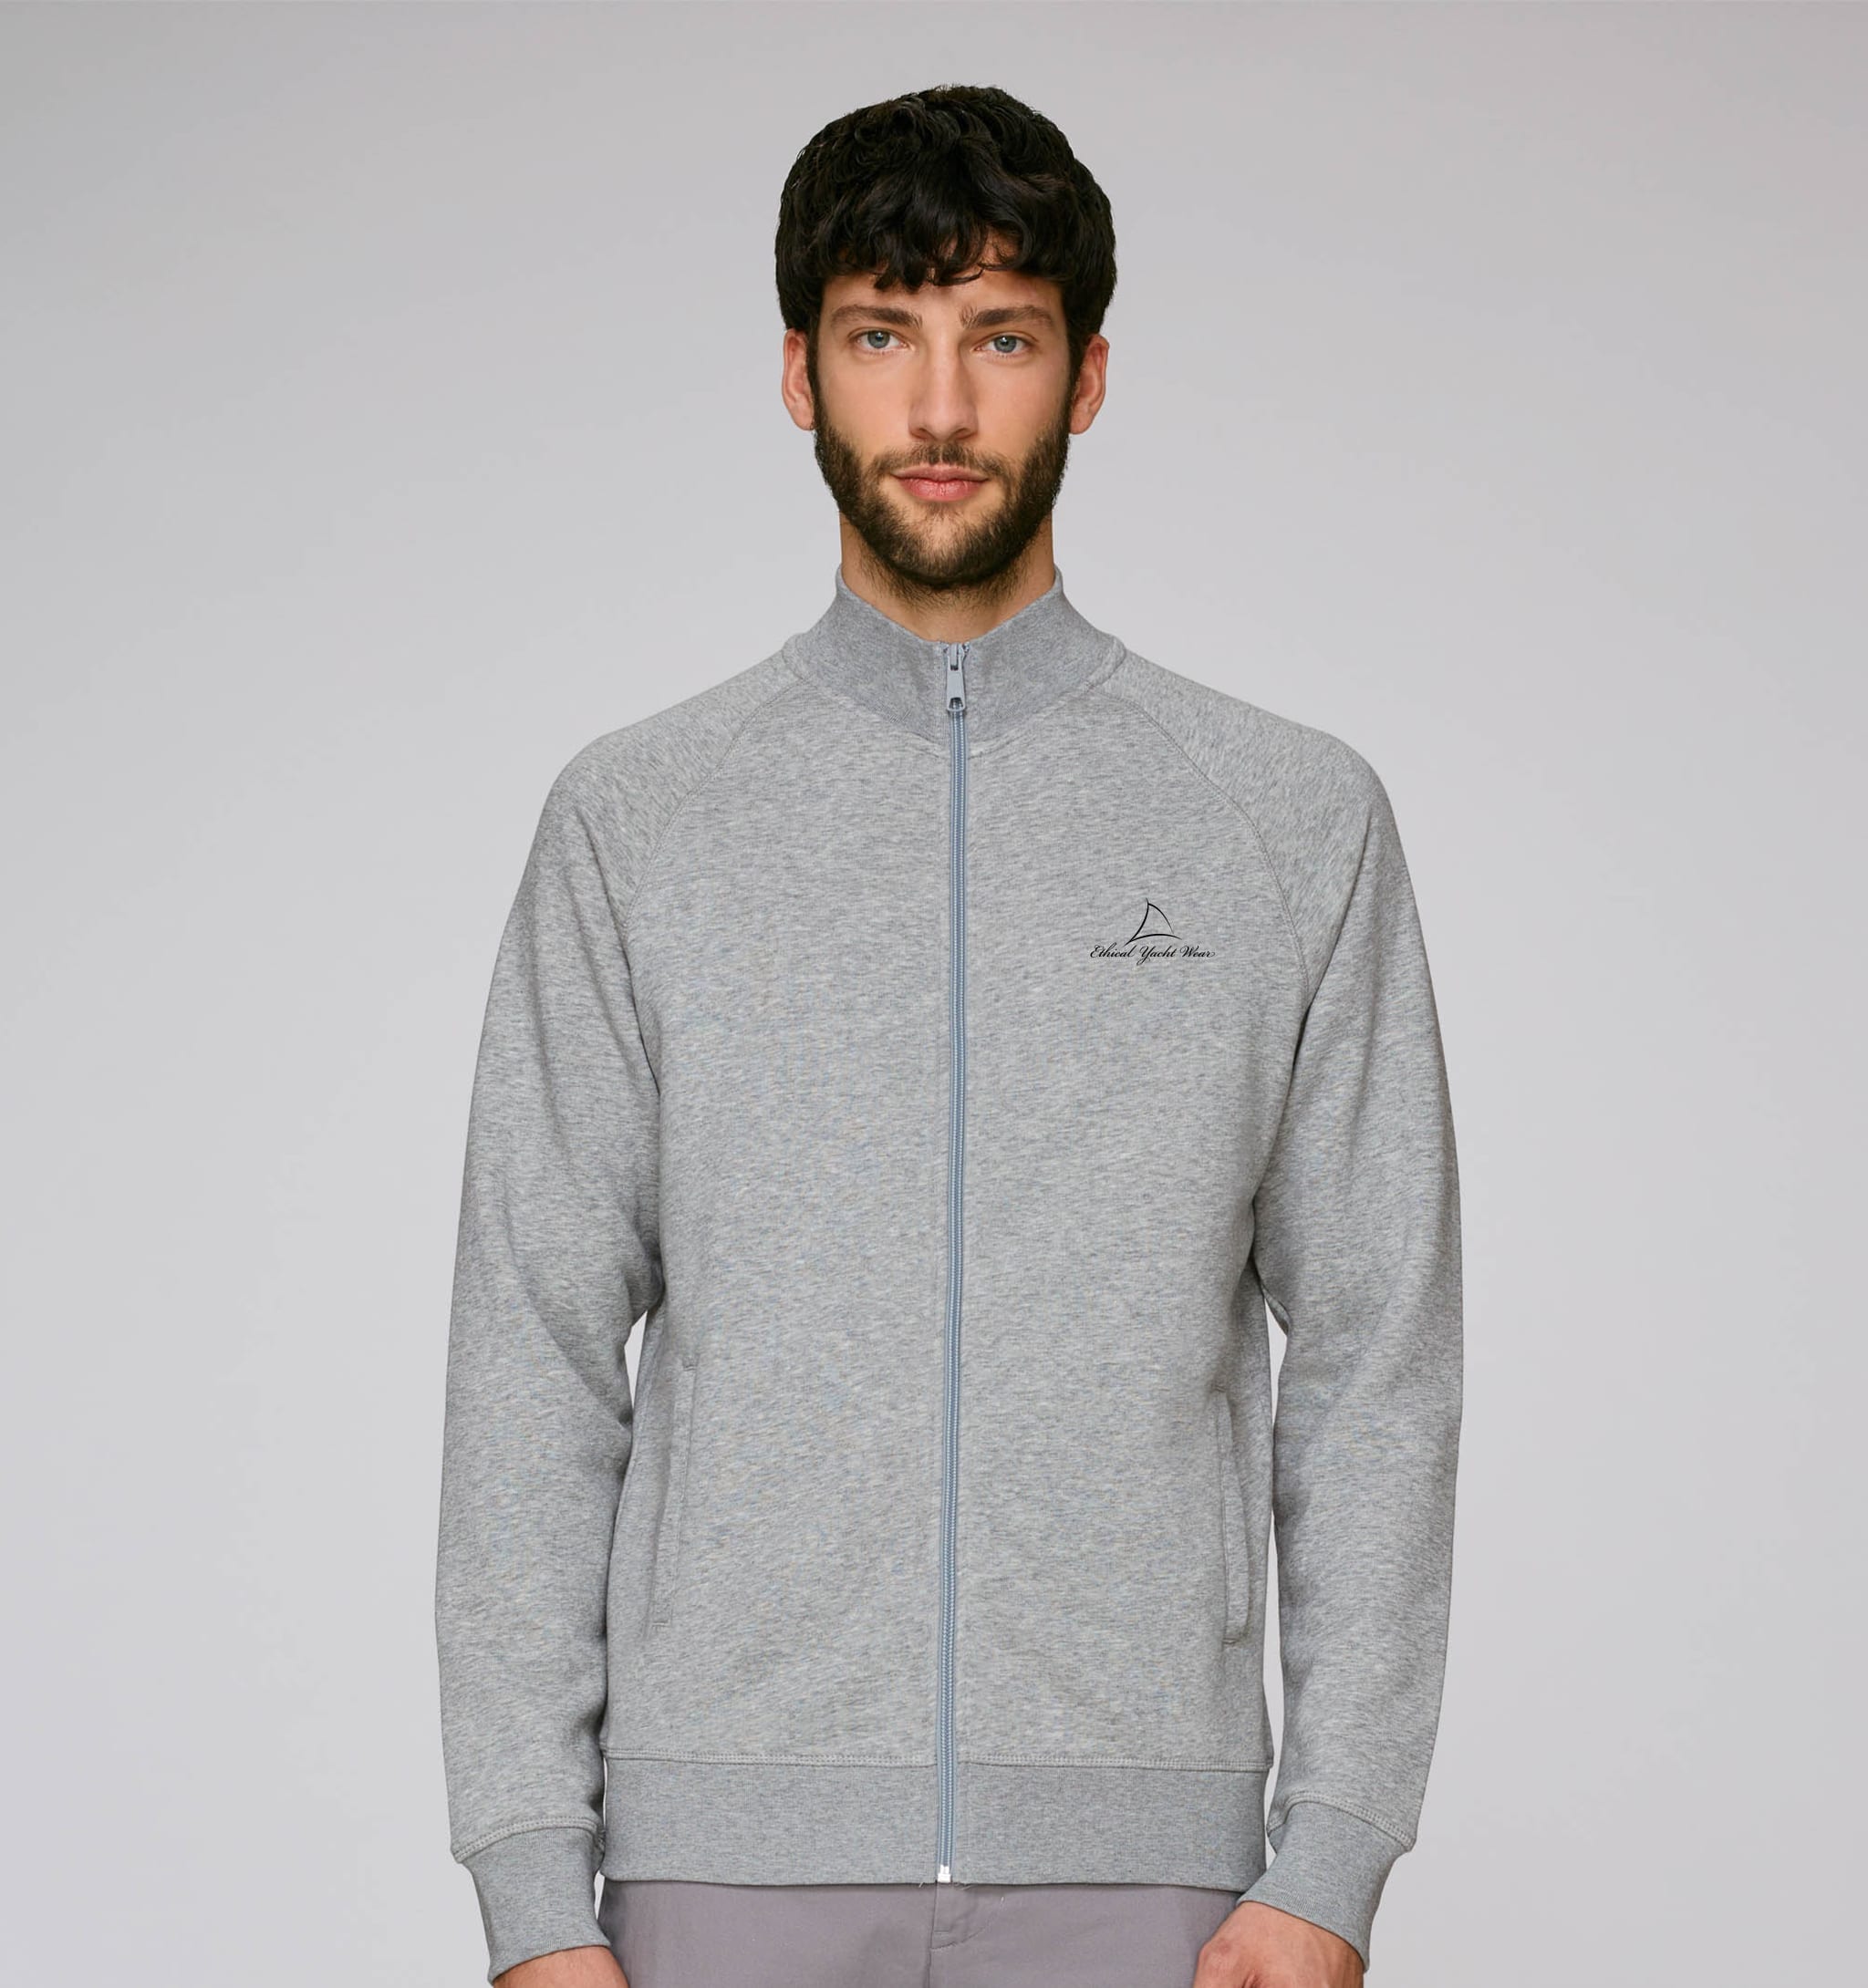 Men's High Collar Zip Up Sweatshirt - Ethical Yachtwear